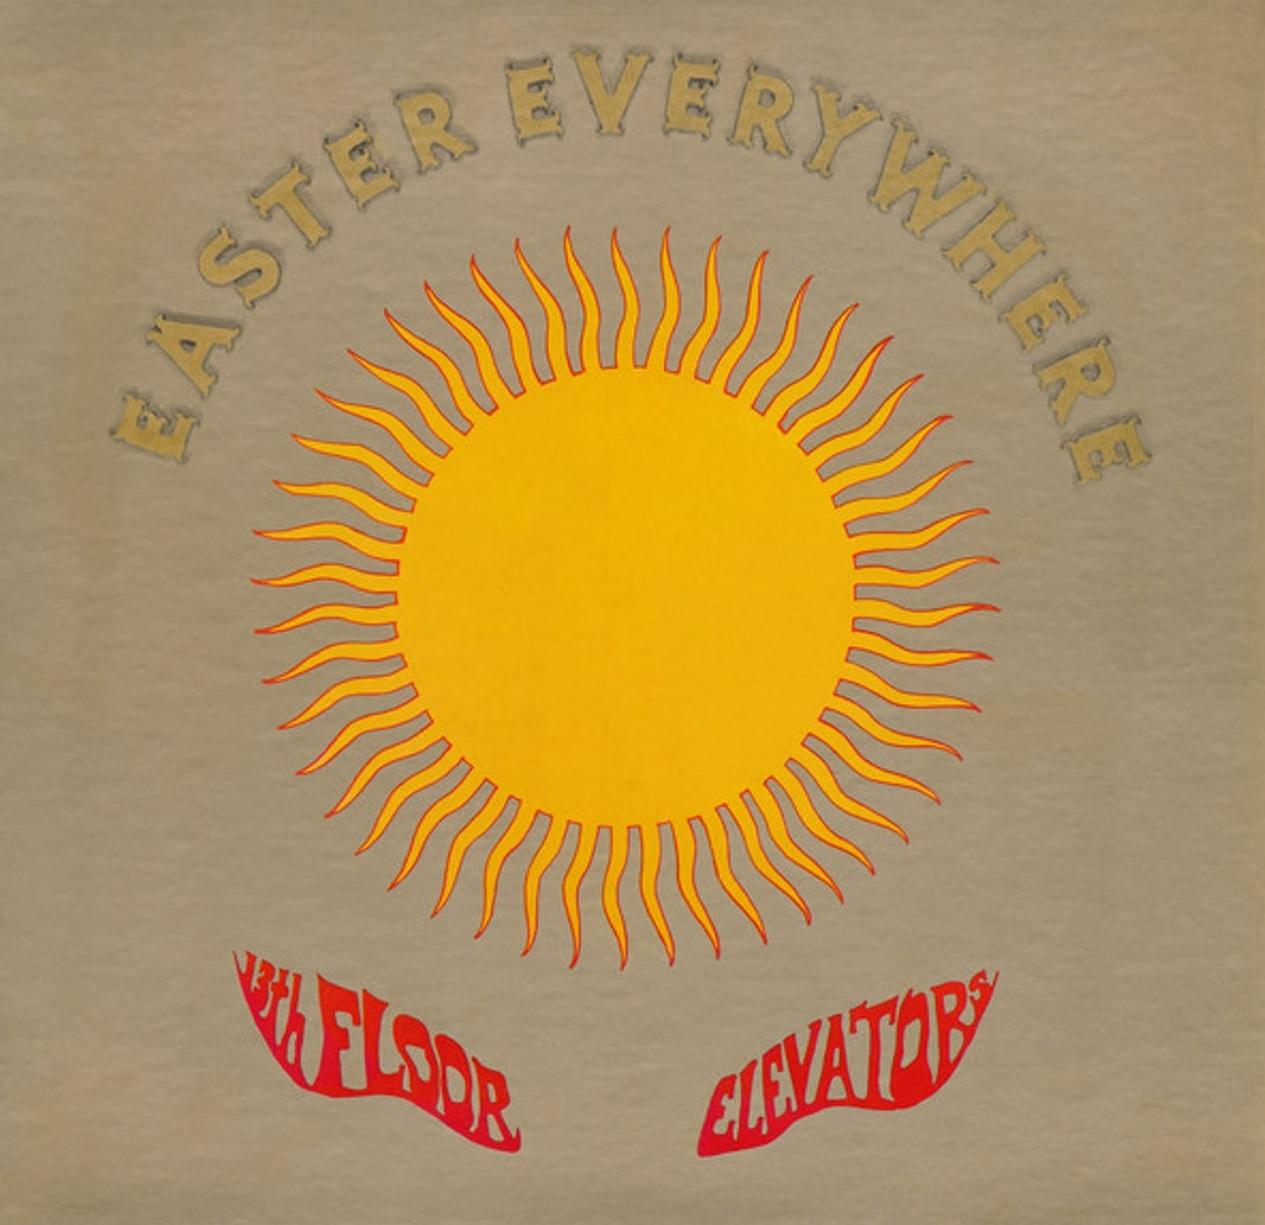 Easter Everywhere ( Ltd. Ed. 2LP  Yellow/Red Splatter vinyl )